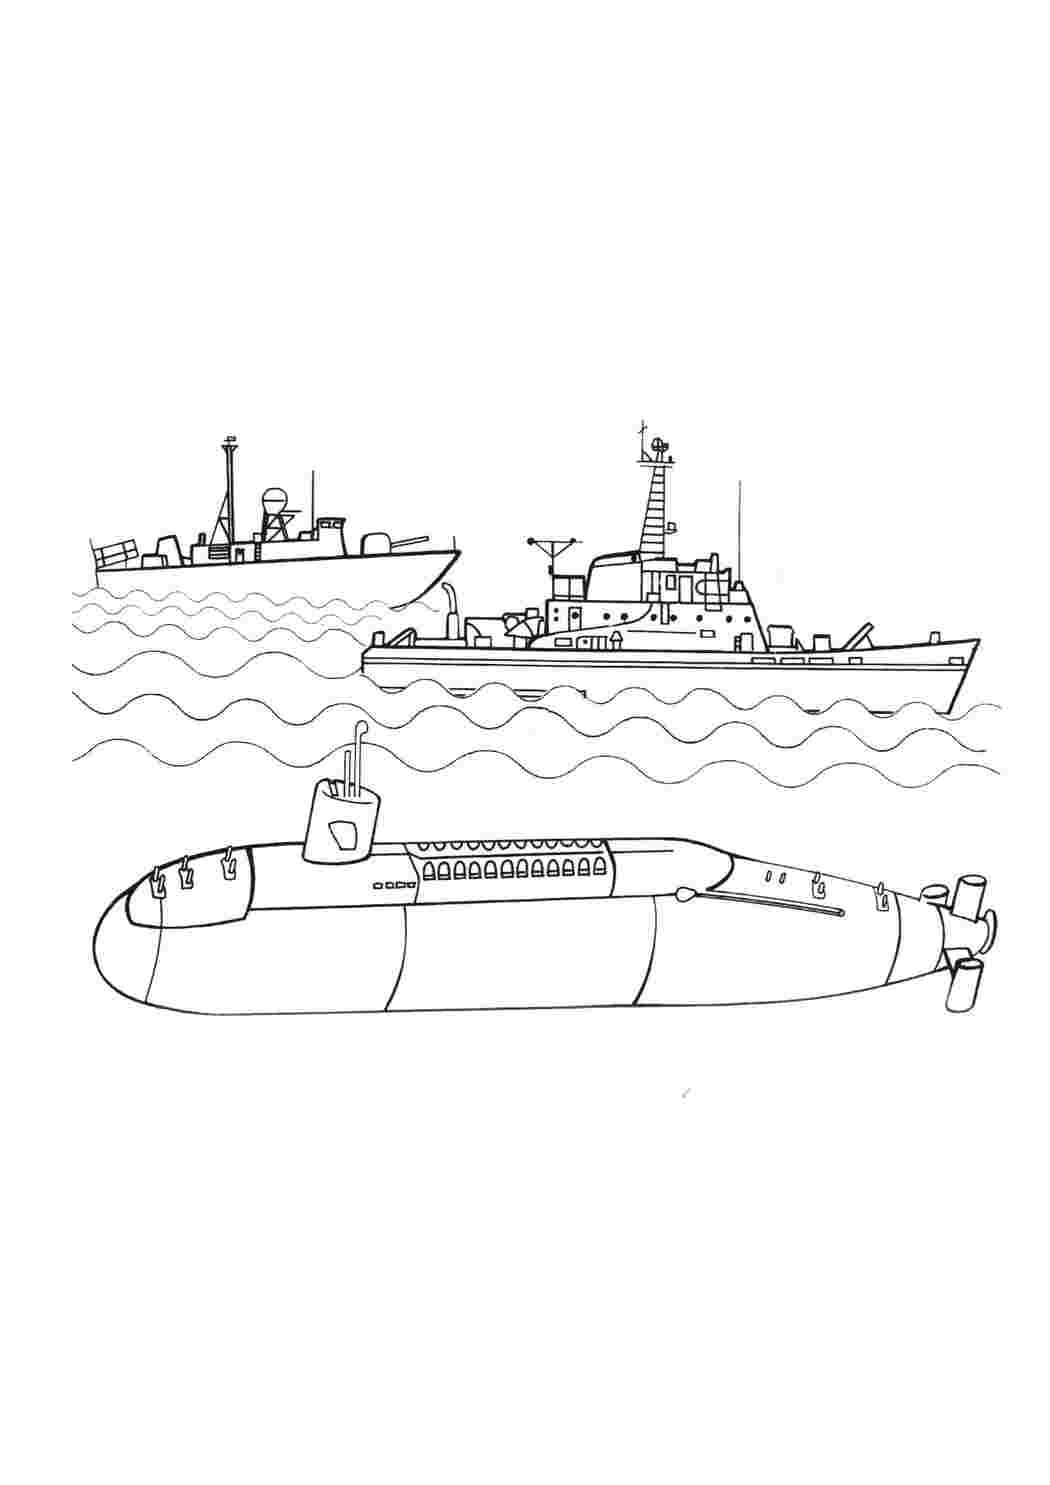 Раскраски картинки на рабочий стол онлайн Подводная лодка на задании Скачать раскраски для мальчиков